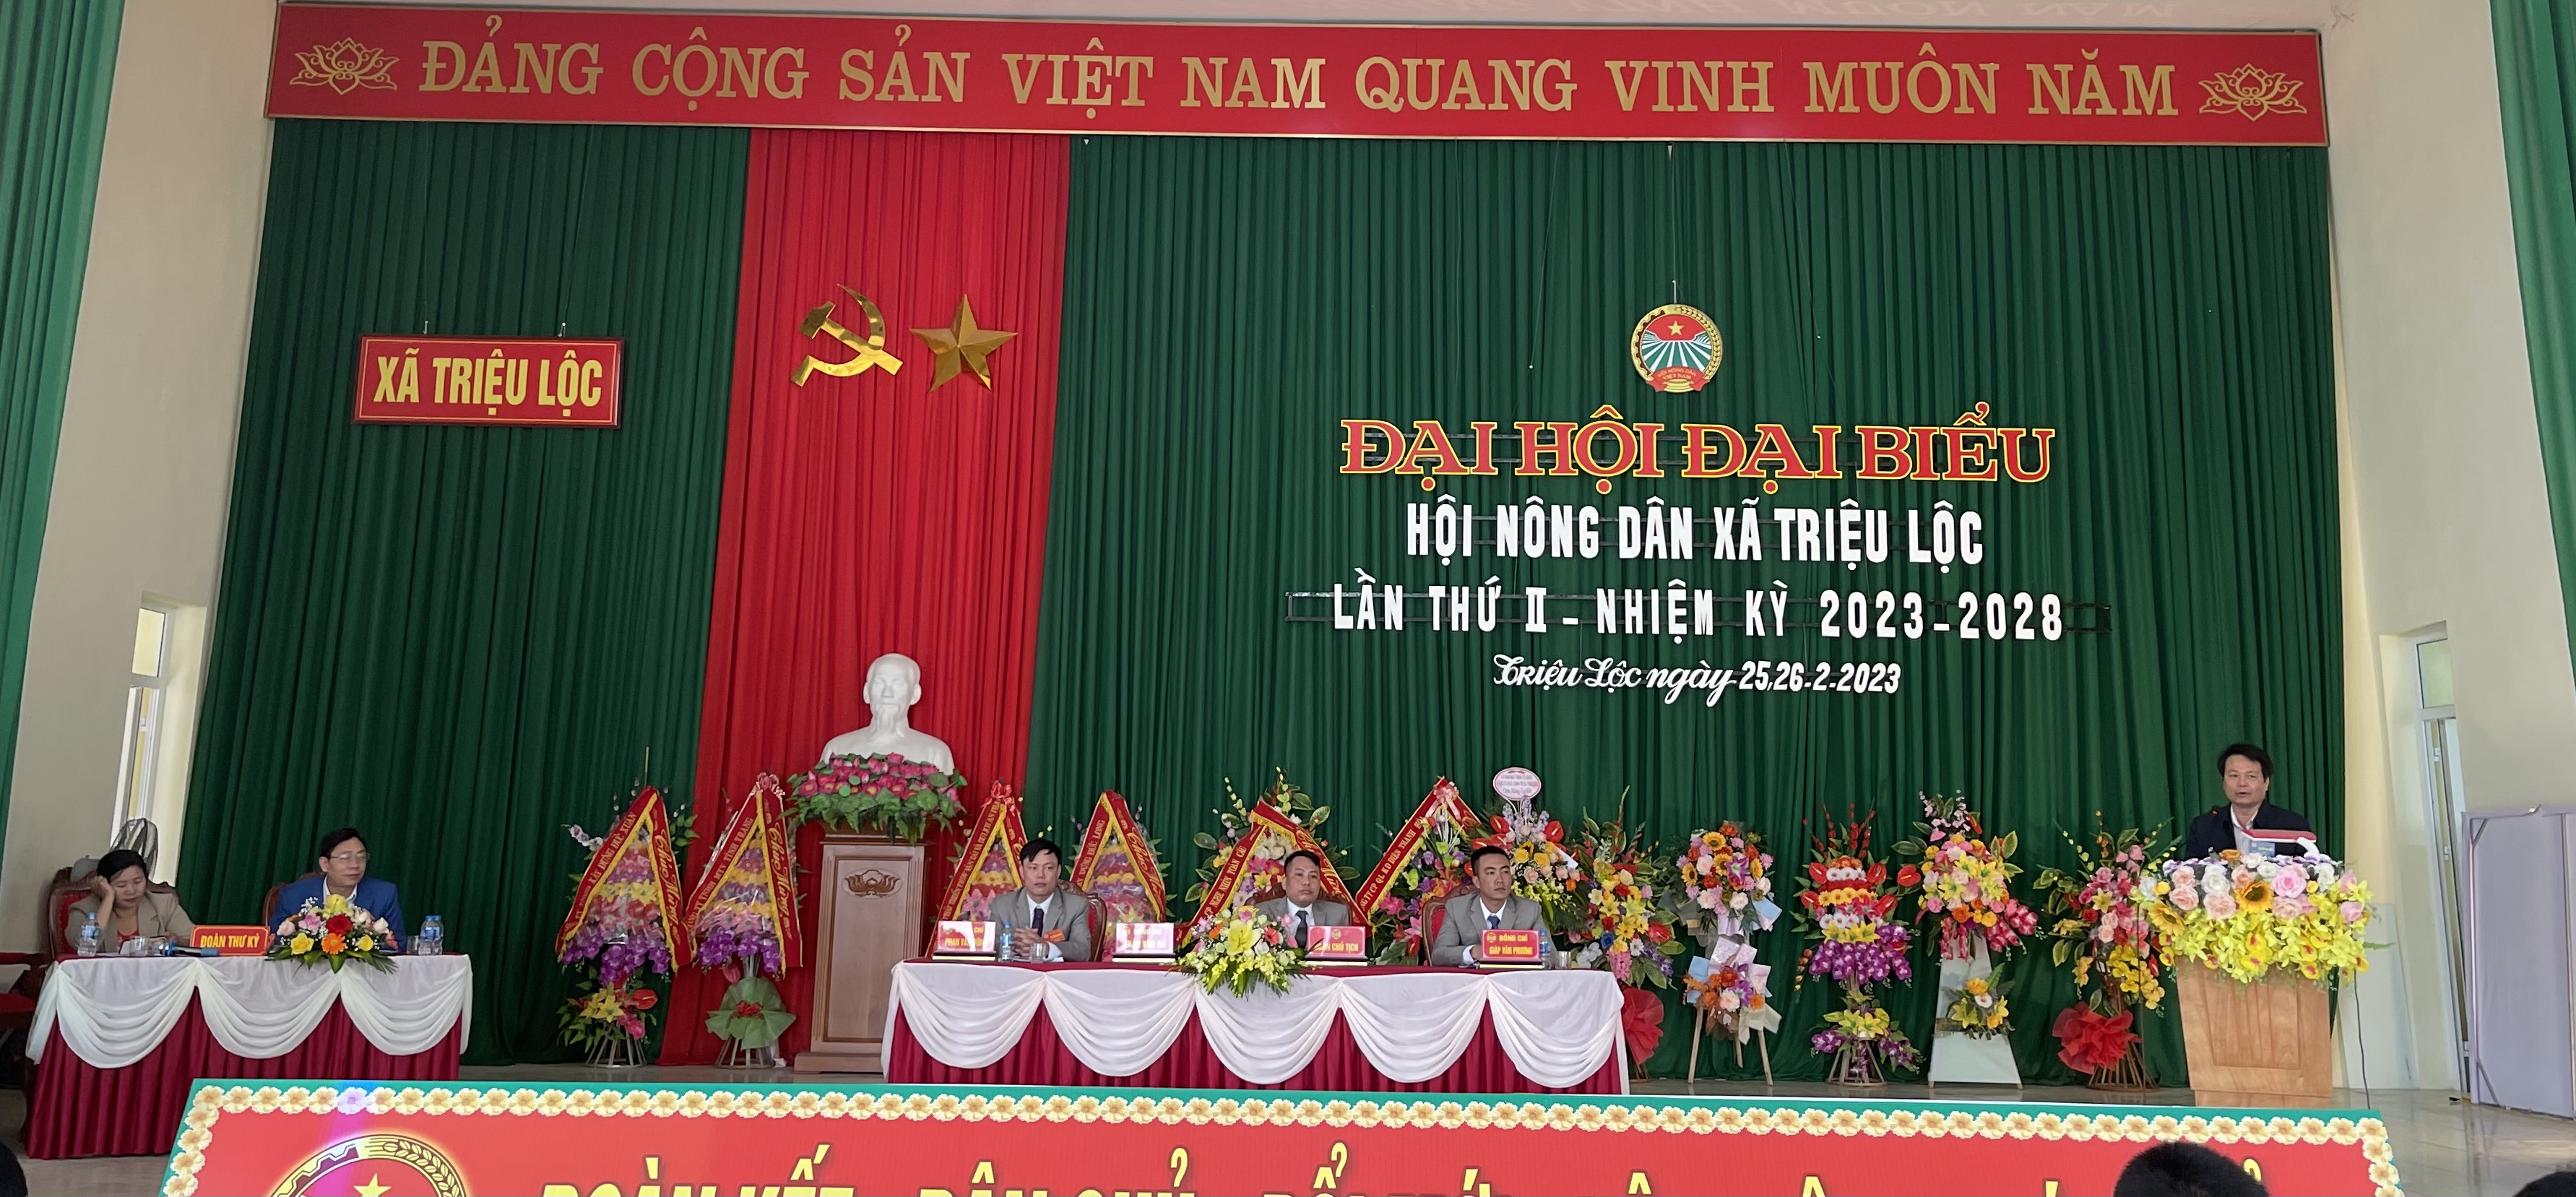 Hội Nông dân xã Triệu Lộc tổ chức Đại hội đại biểu nhiệm kỳ 2023 - 2028